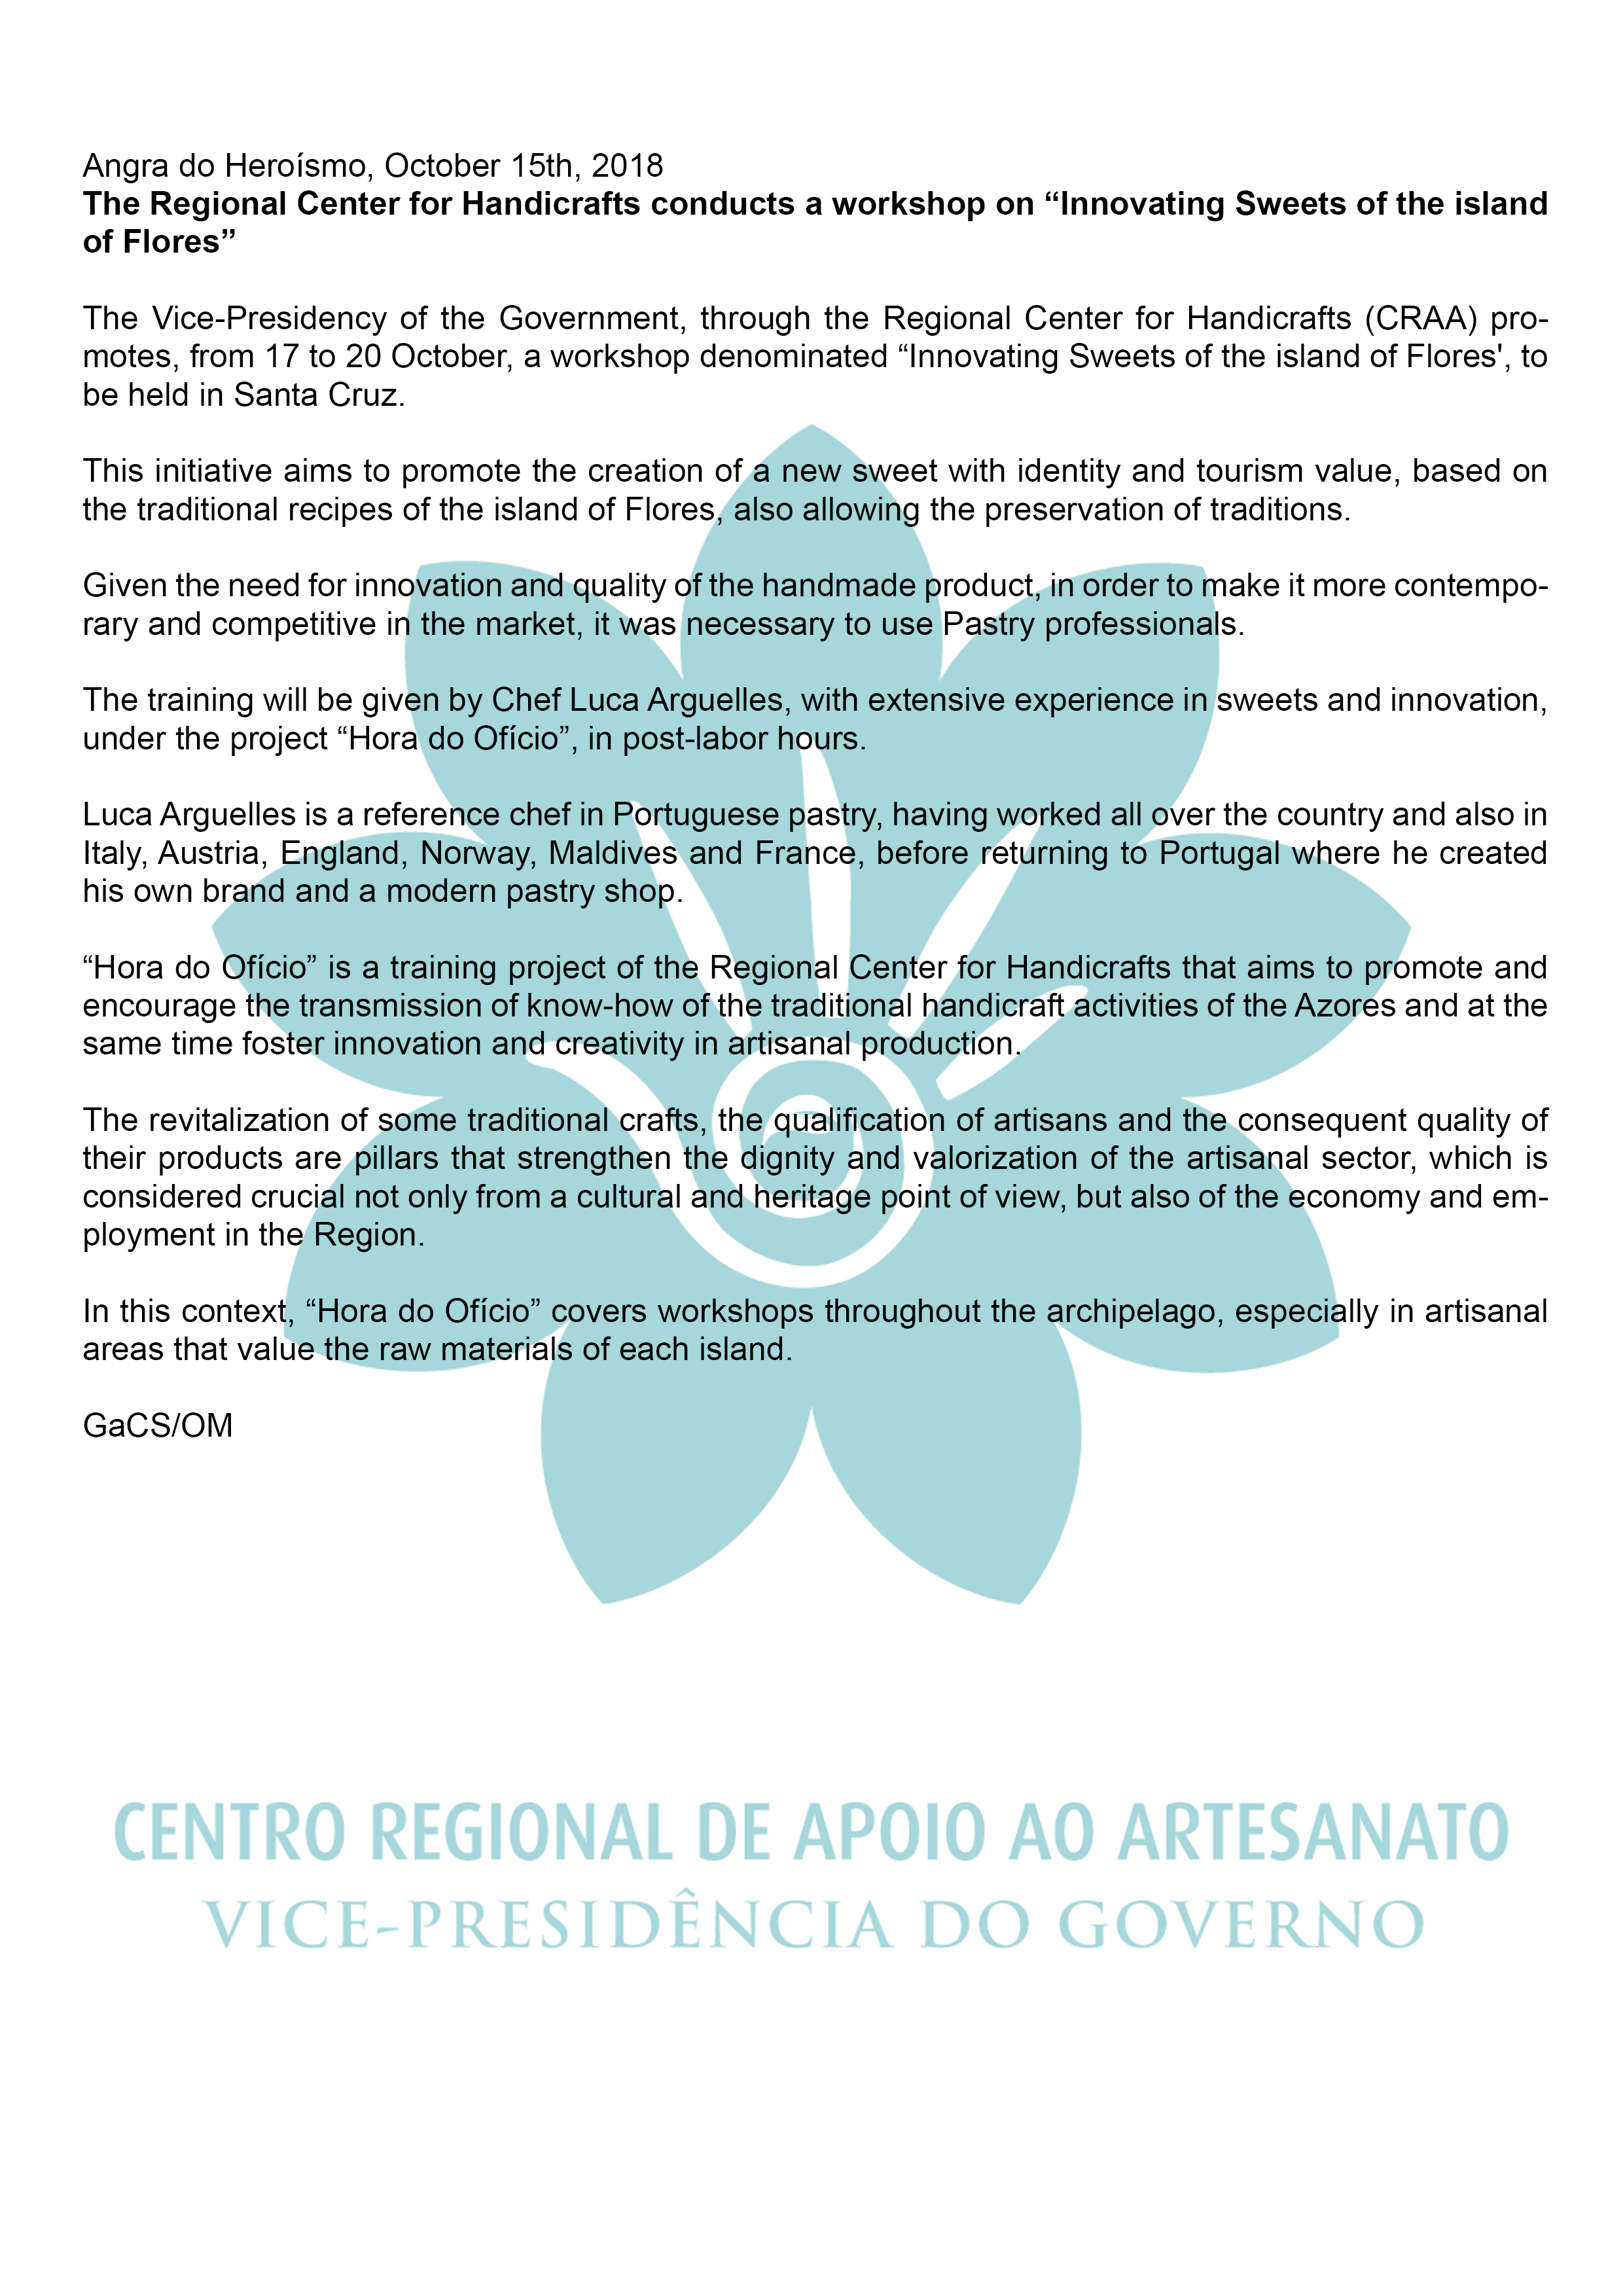 Centro Regional de Apoio ao Artesanato realiza uma formacao sobre Inovar a Docaria da ilha das Flores EN